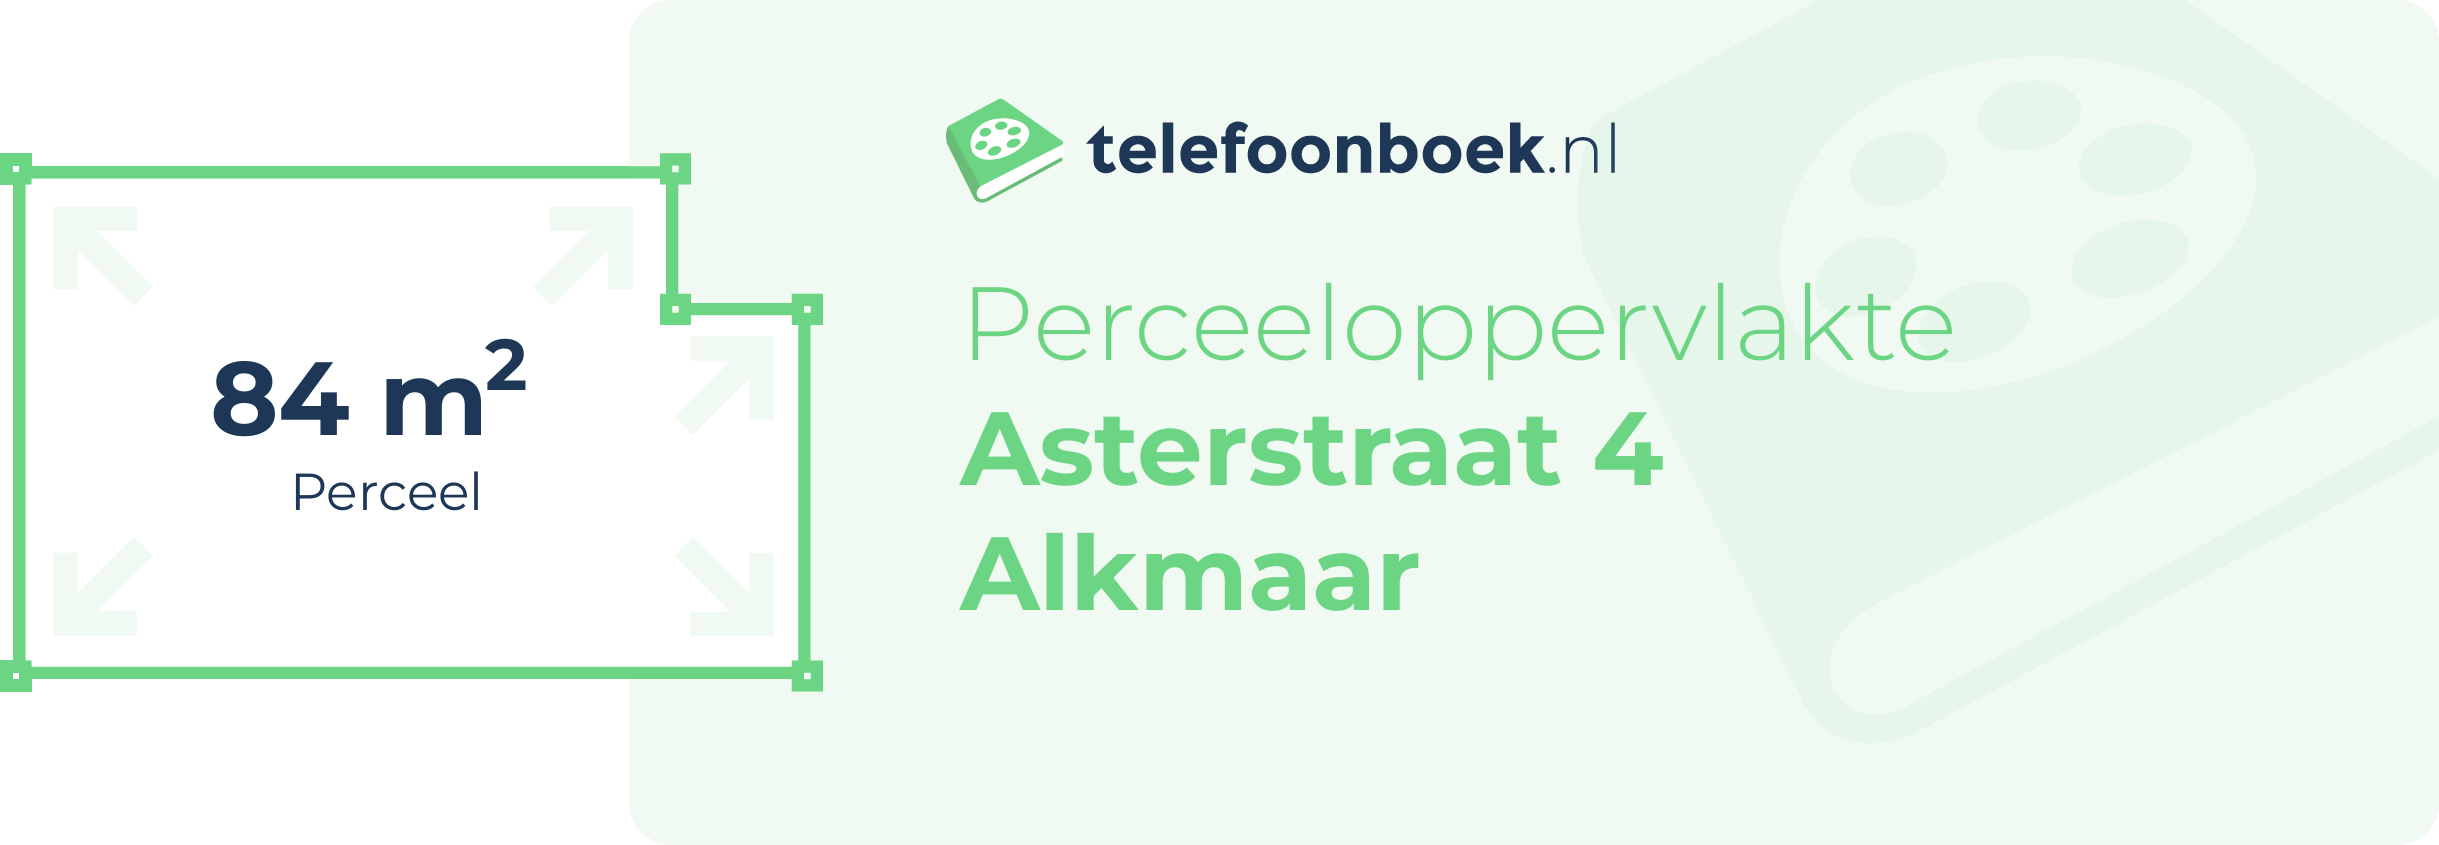 Perceeloppervlakte Asterstraat 4 Alkmaar